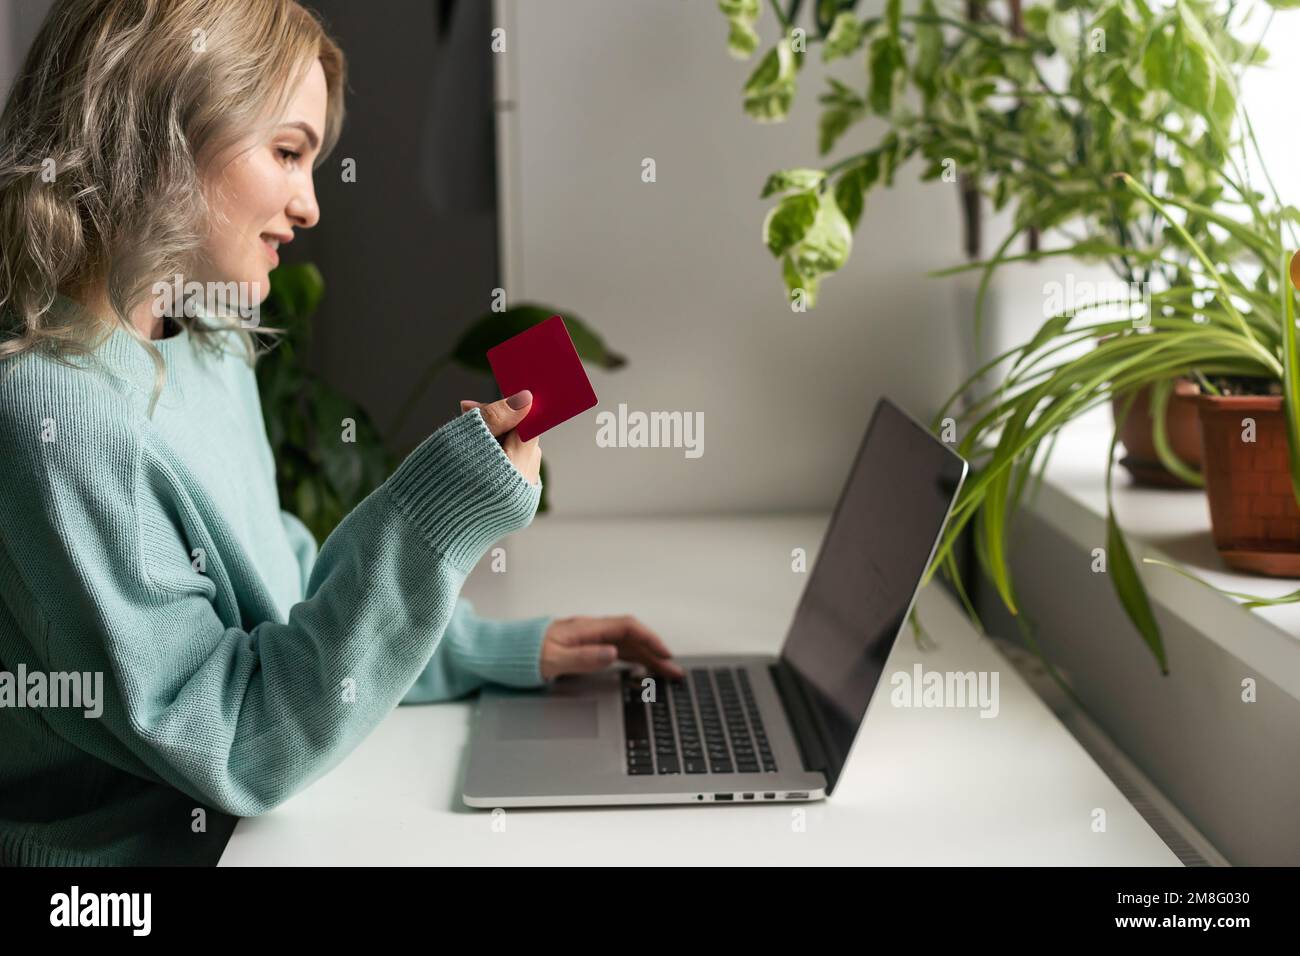 Jeune femme tenant une carte de crédit et utilisant un ordinateur portable. Femme d'affaires ou entrepreneur travaillant à la maison. Achats en ligne, e-commerce, Internet Banque D'Images